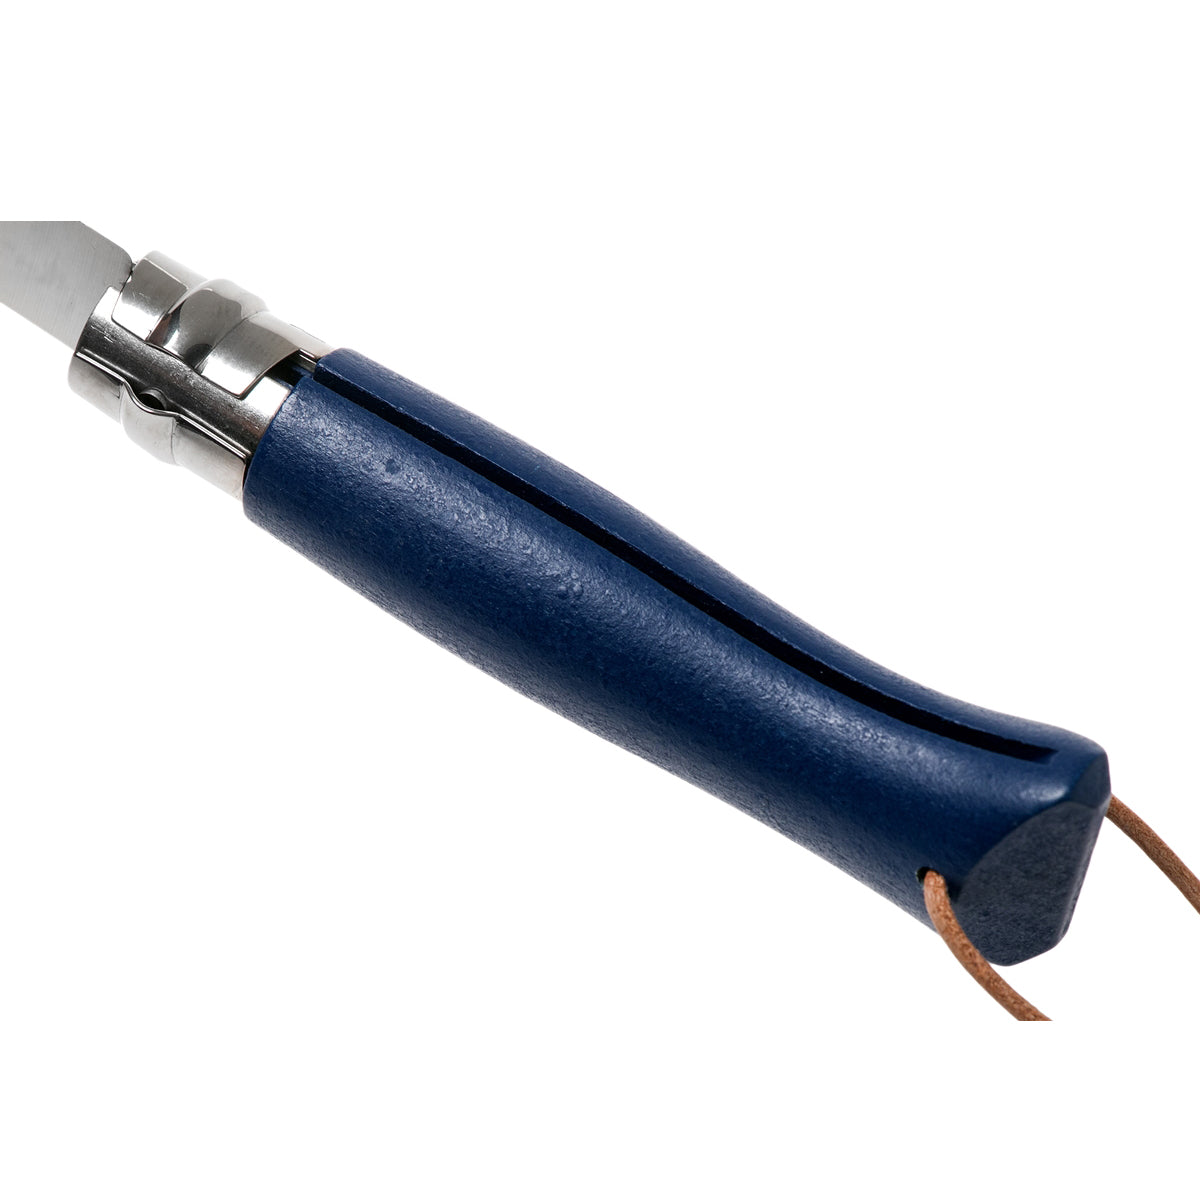 opinel pocket knife blue 08